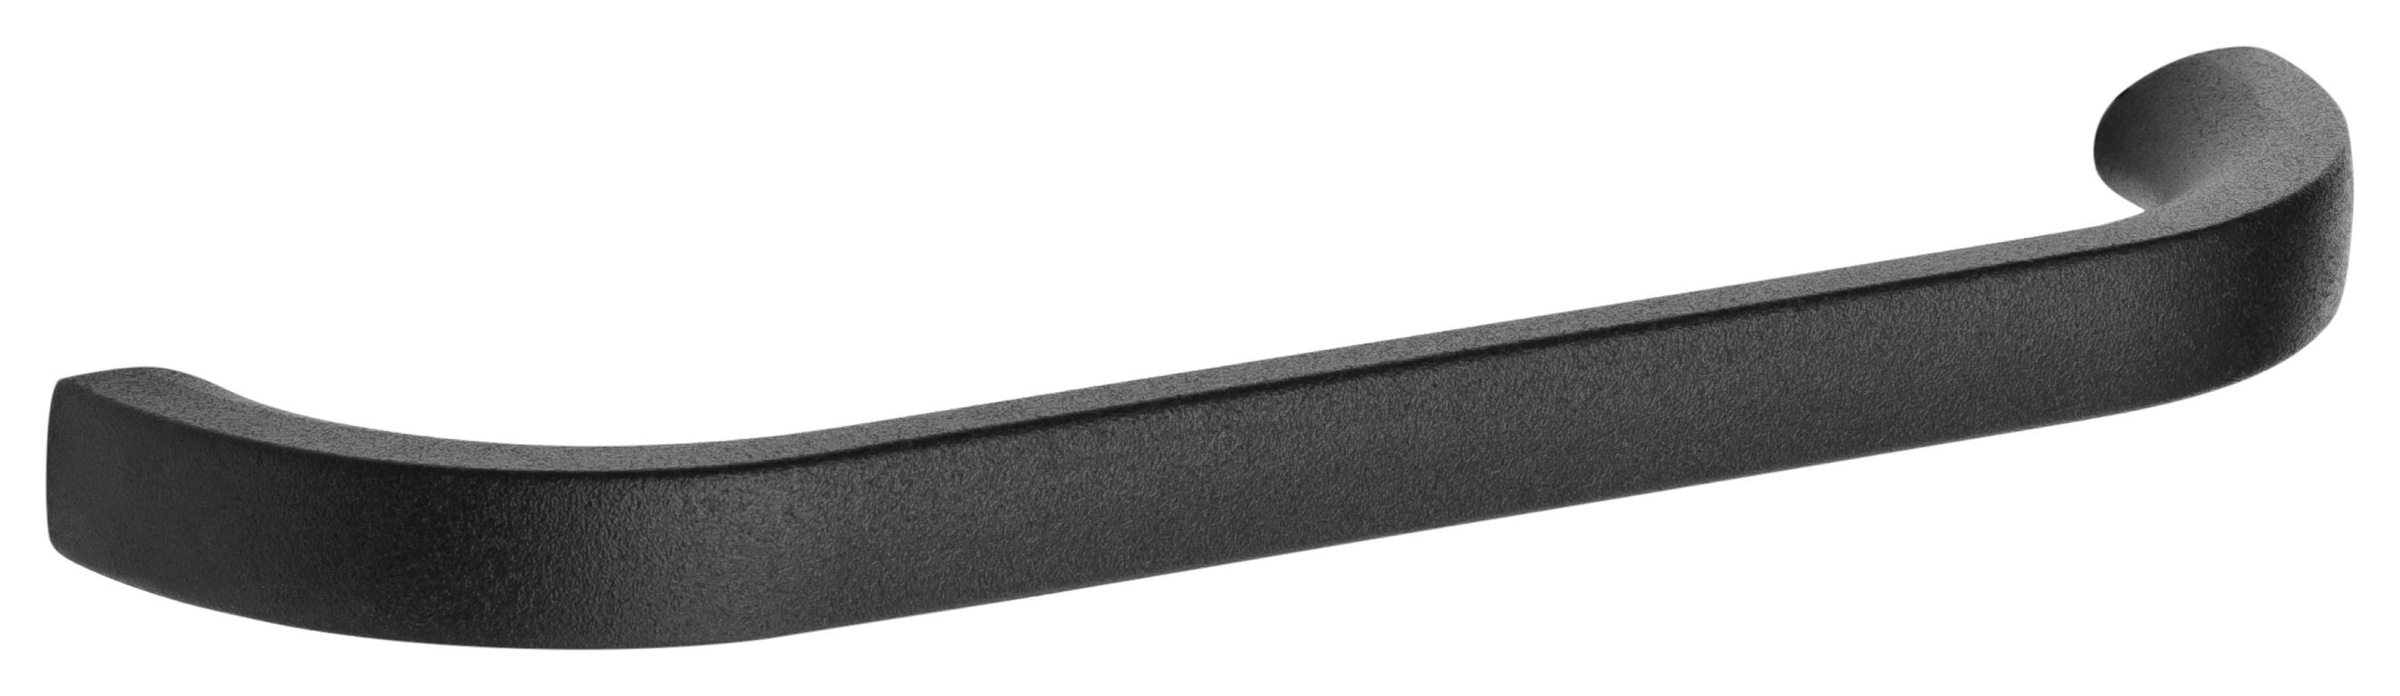 OPTIFIT Backofen/Kühlumbauschrank »Elga«, mit Soft-Close-Funktion, höhenverstellbaren Füssen, Breite 60 cm